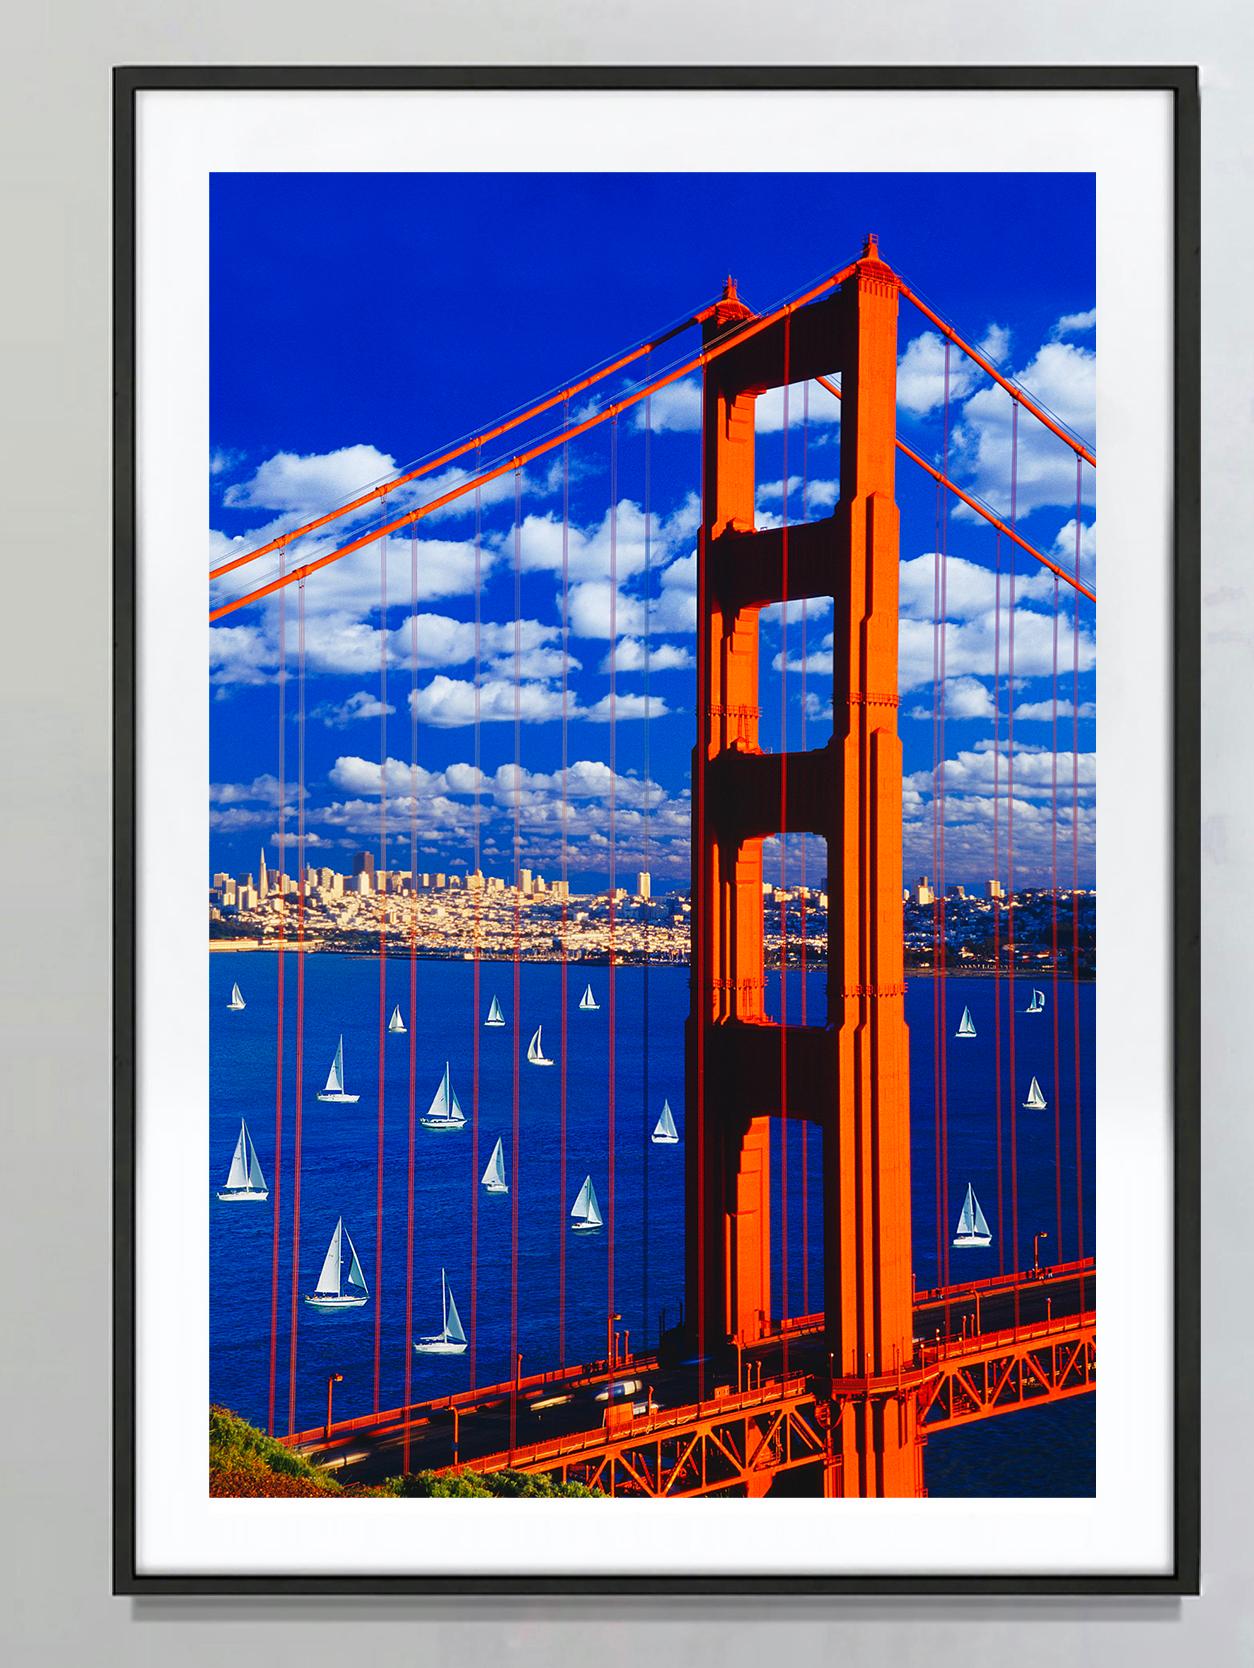 Goldene Torbrücke mit Segelbooten und Wolken, blauer Himmel, Kunstfotografie – Photograph von Mitchell Funk